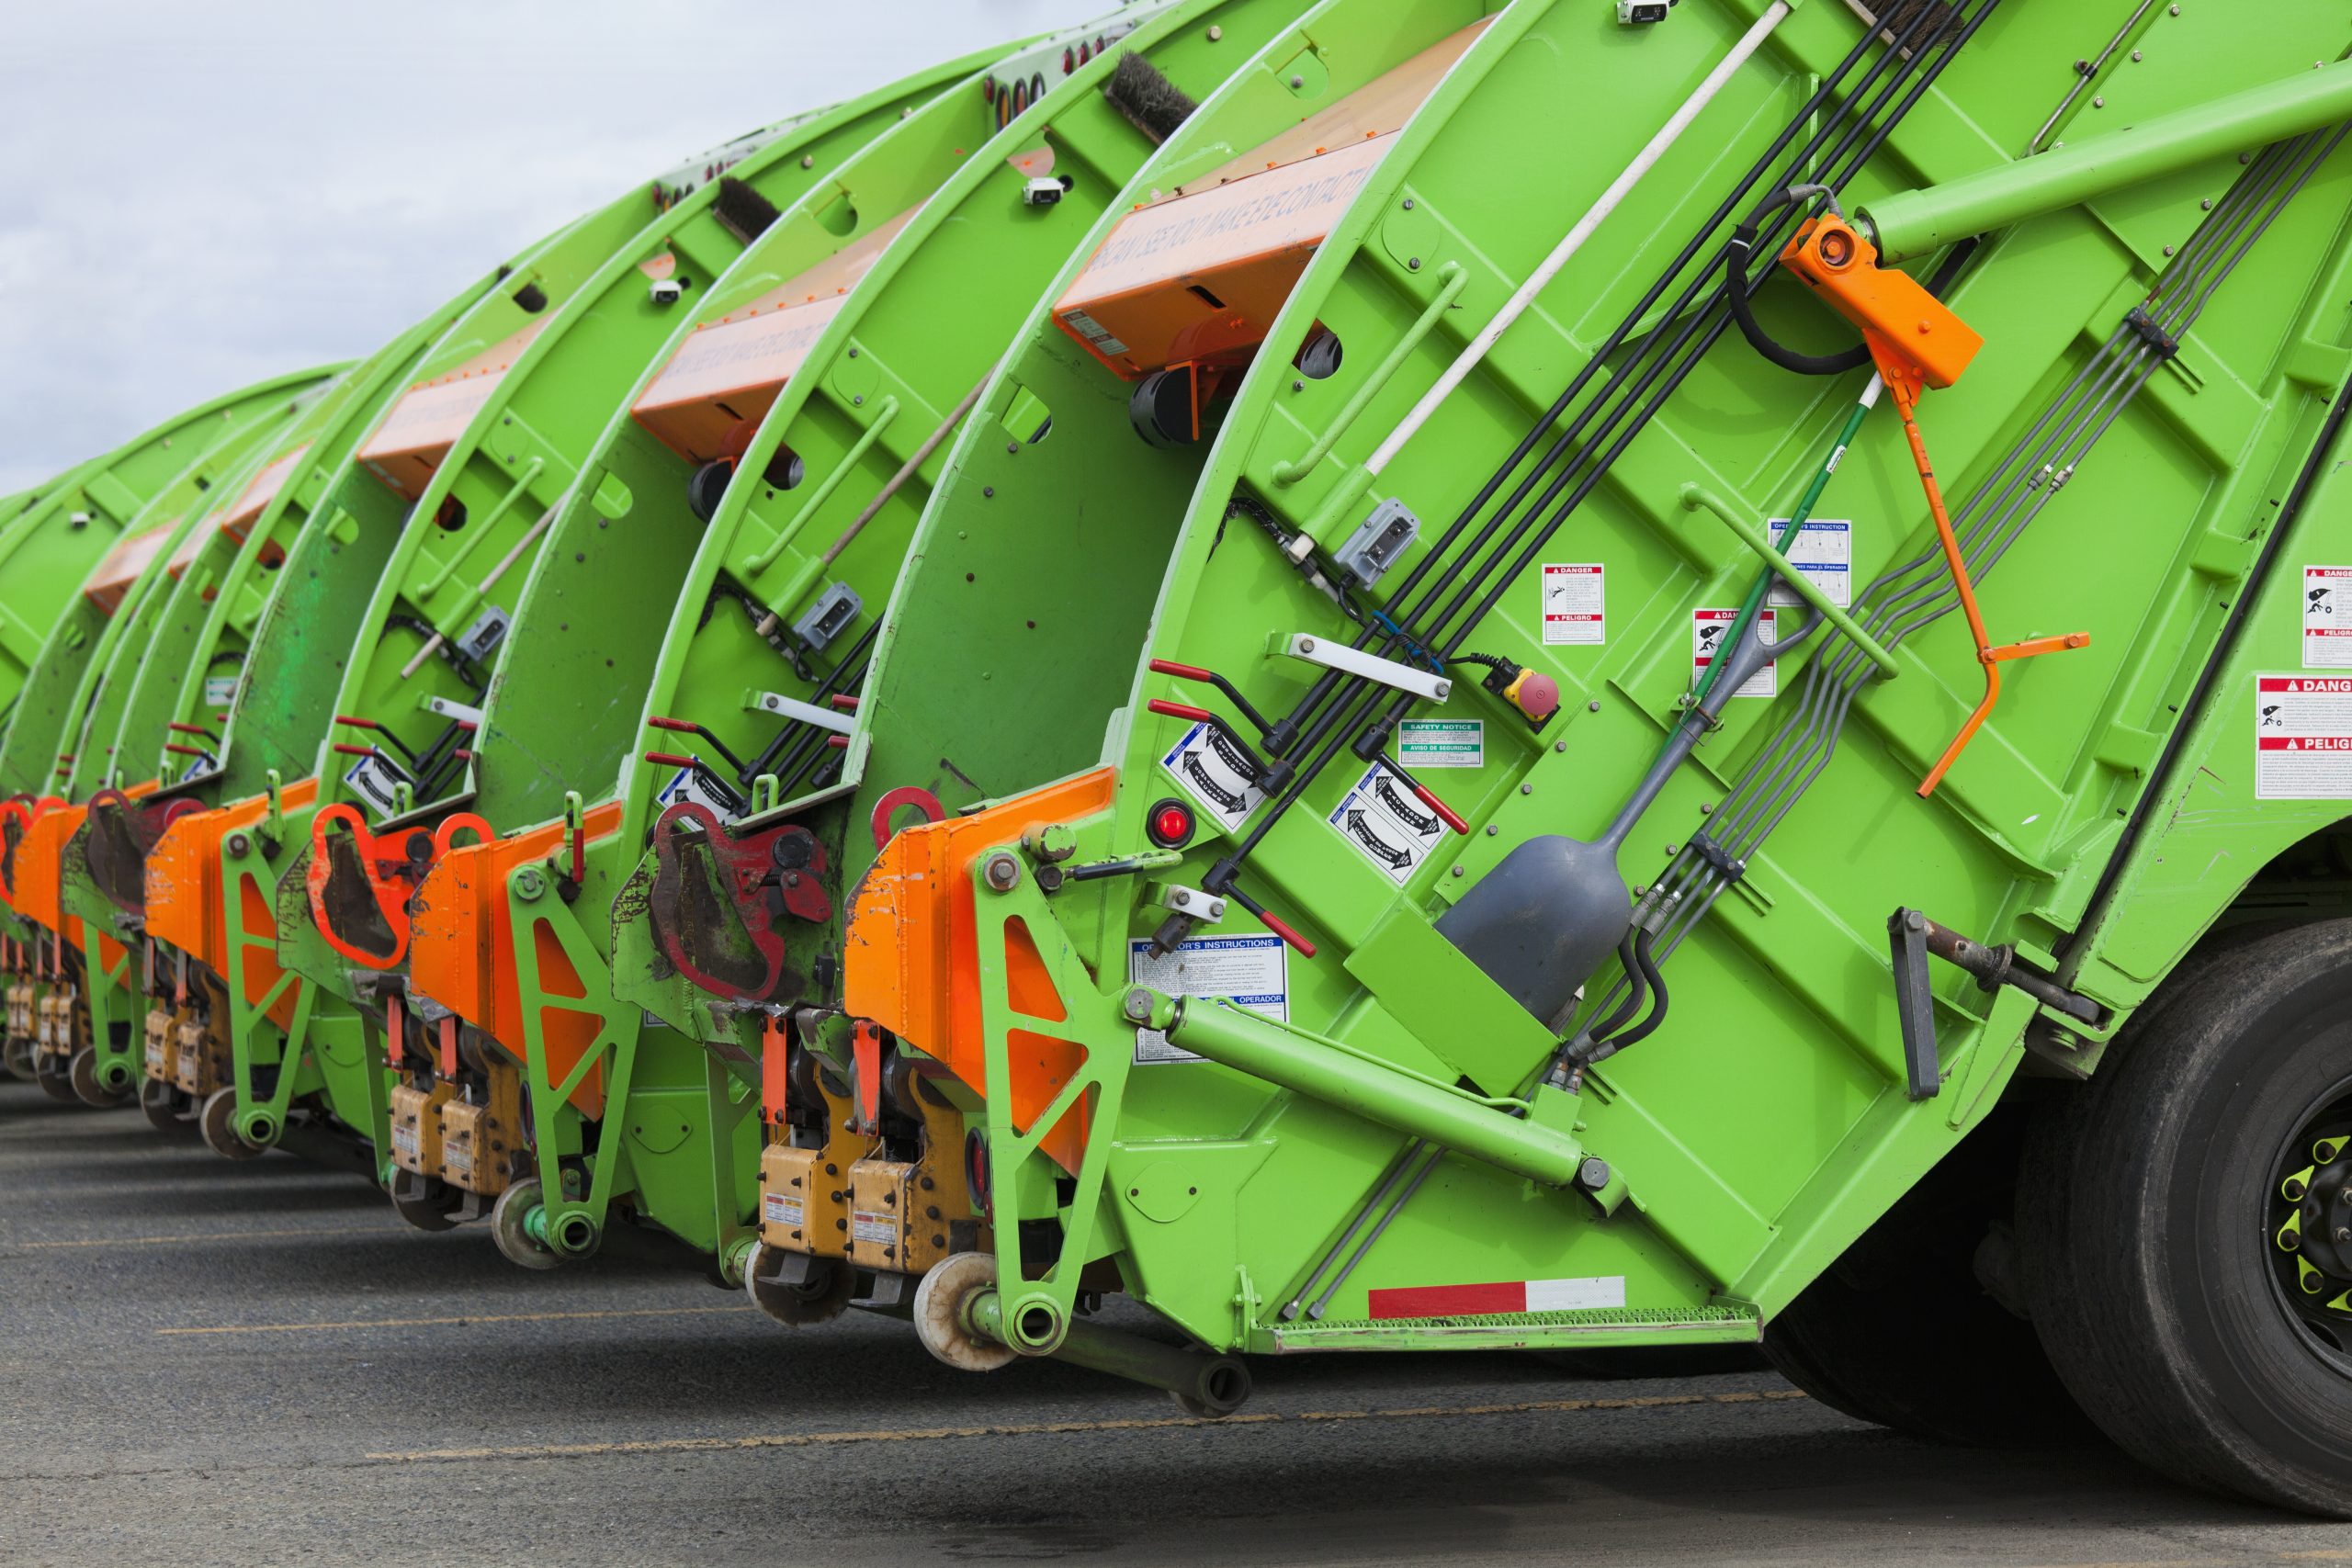 Garbage Truck Fleet helping clean up e-waste